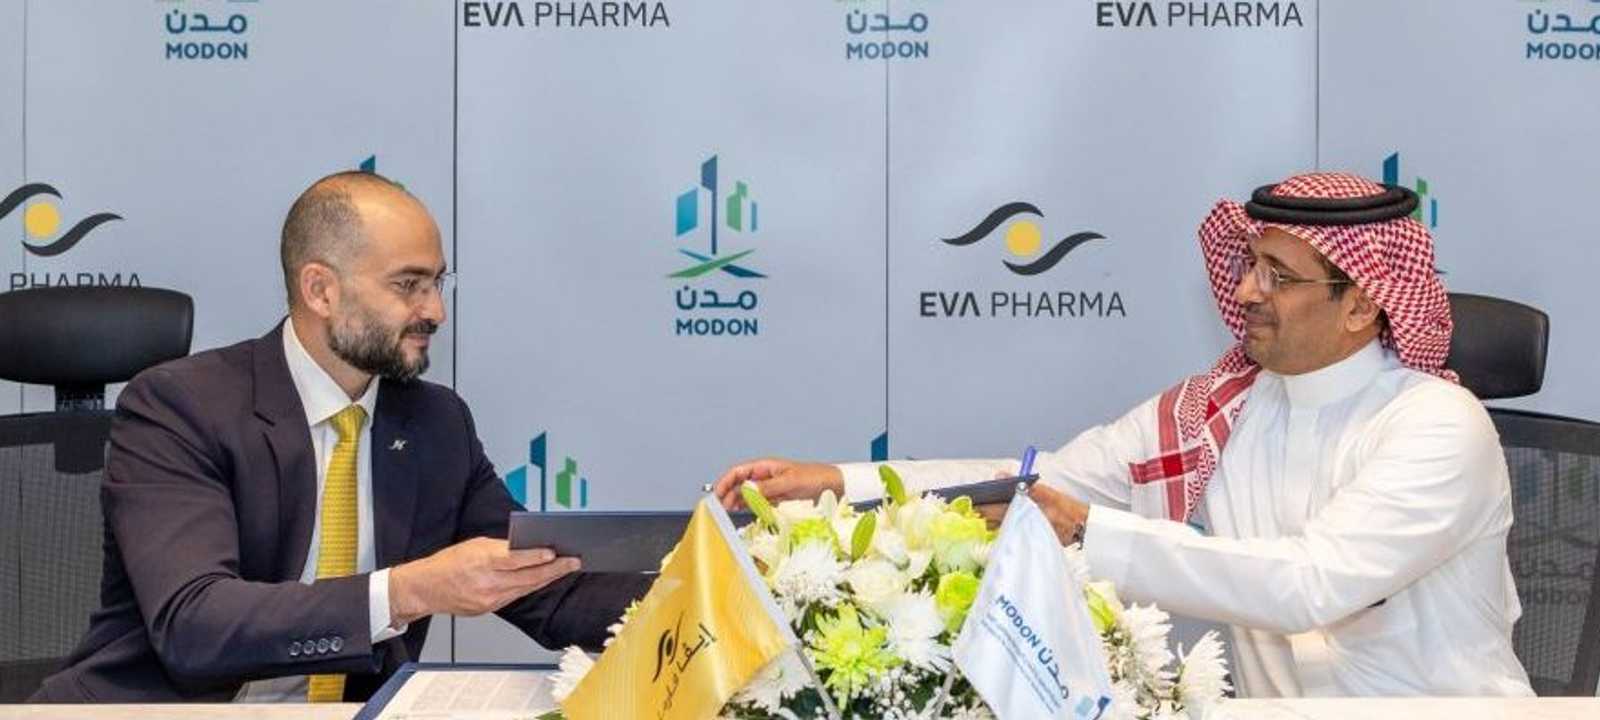 توقيع الاتفاق بين إيفا فارما ومدن السعودية